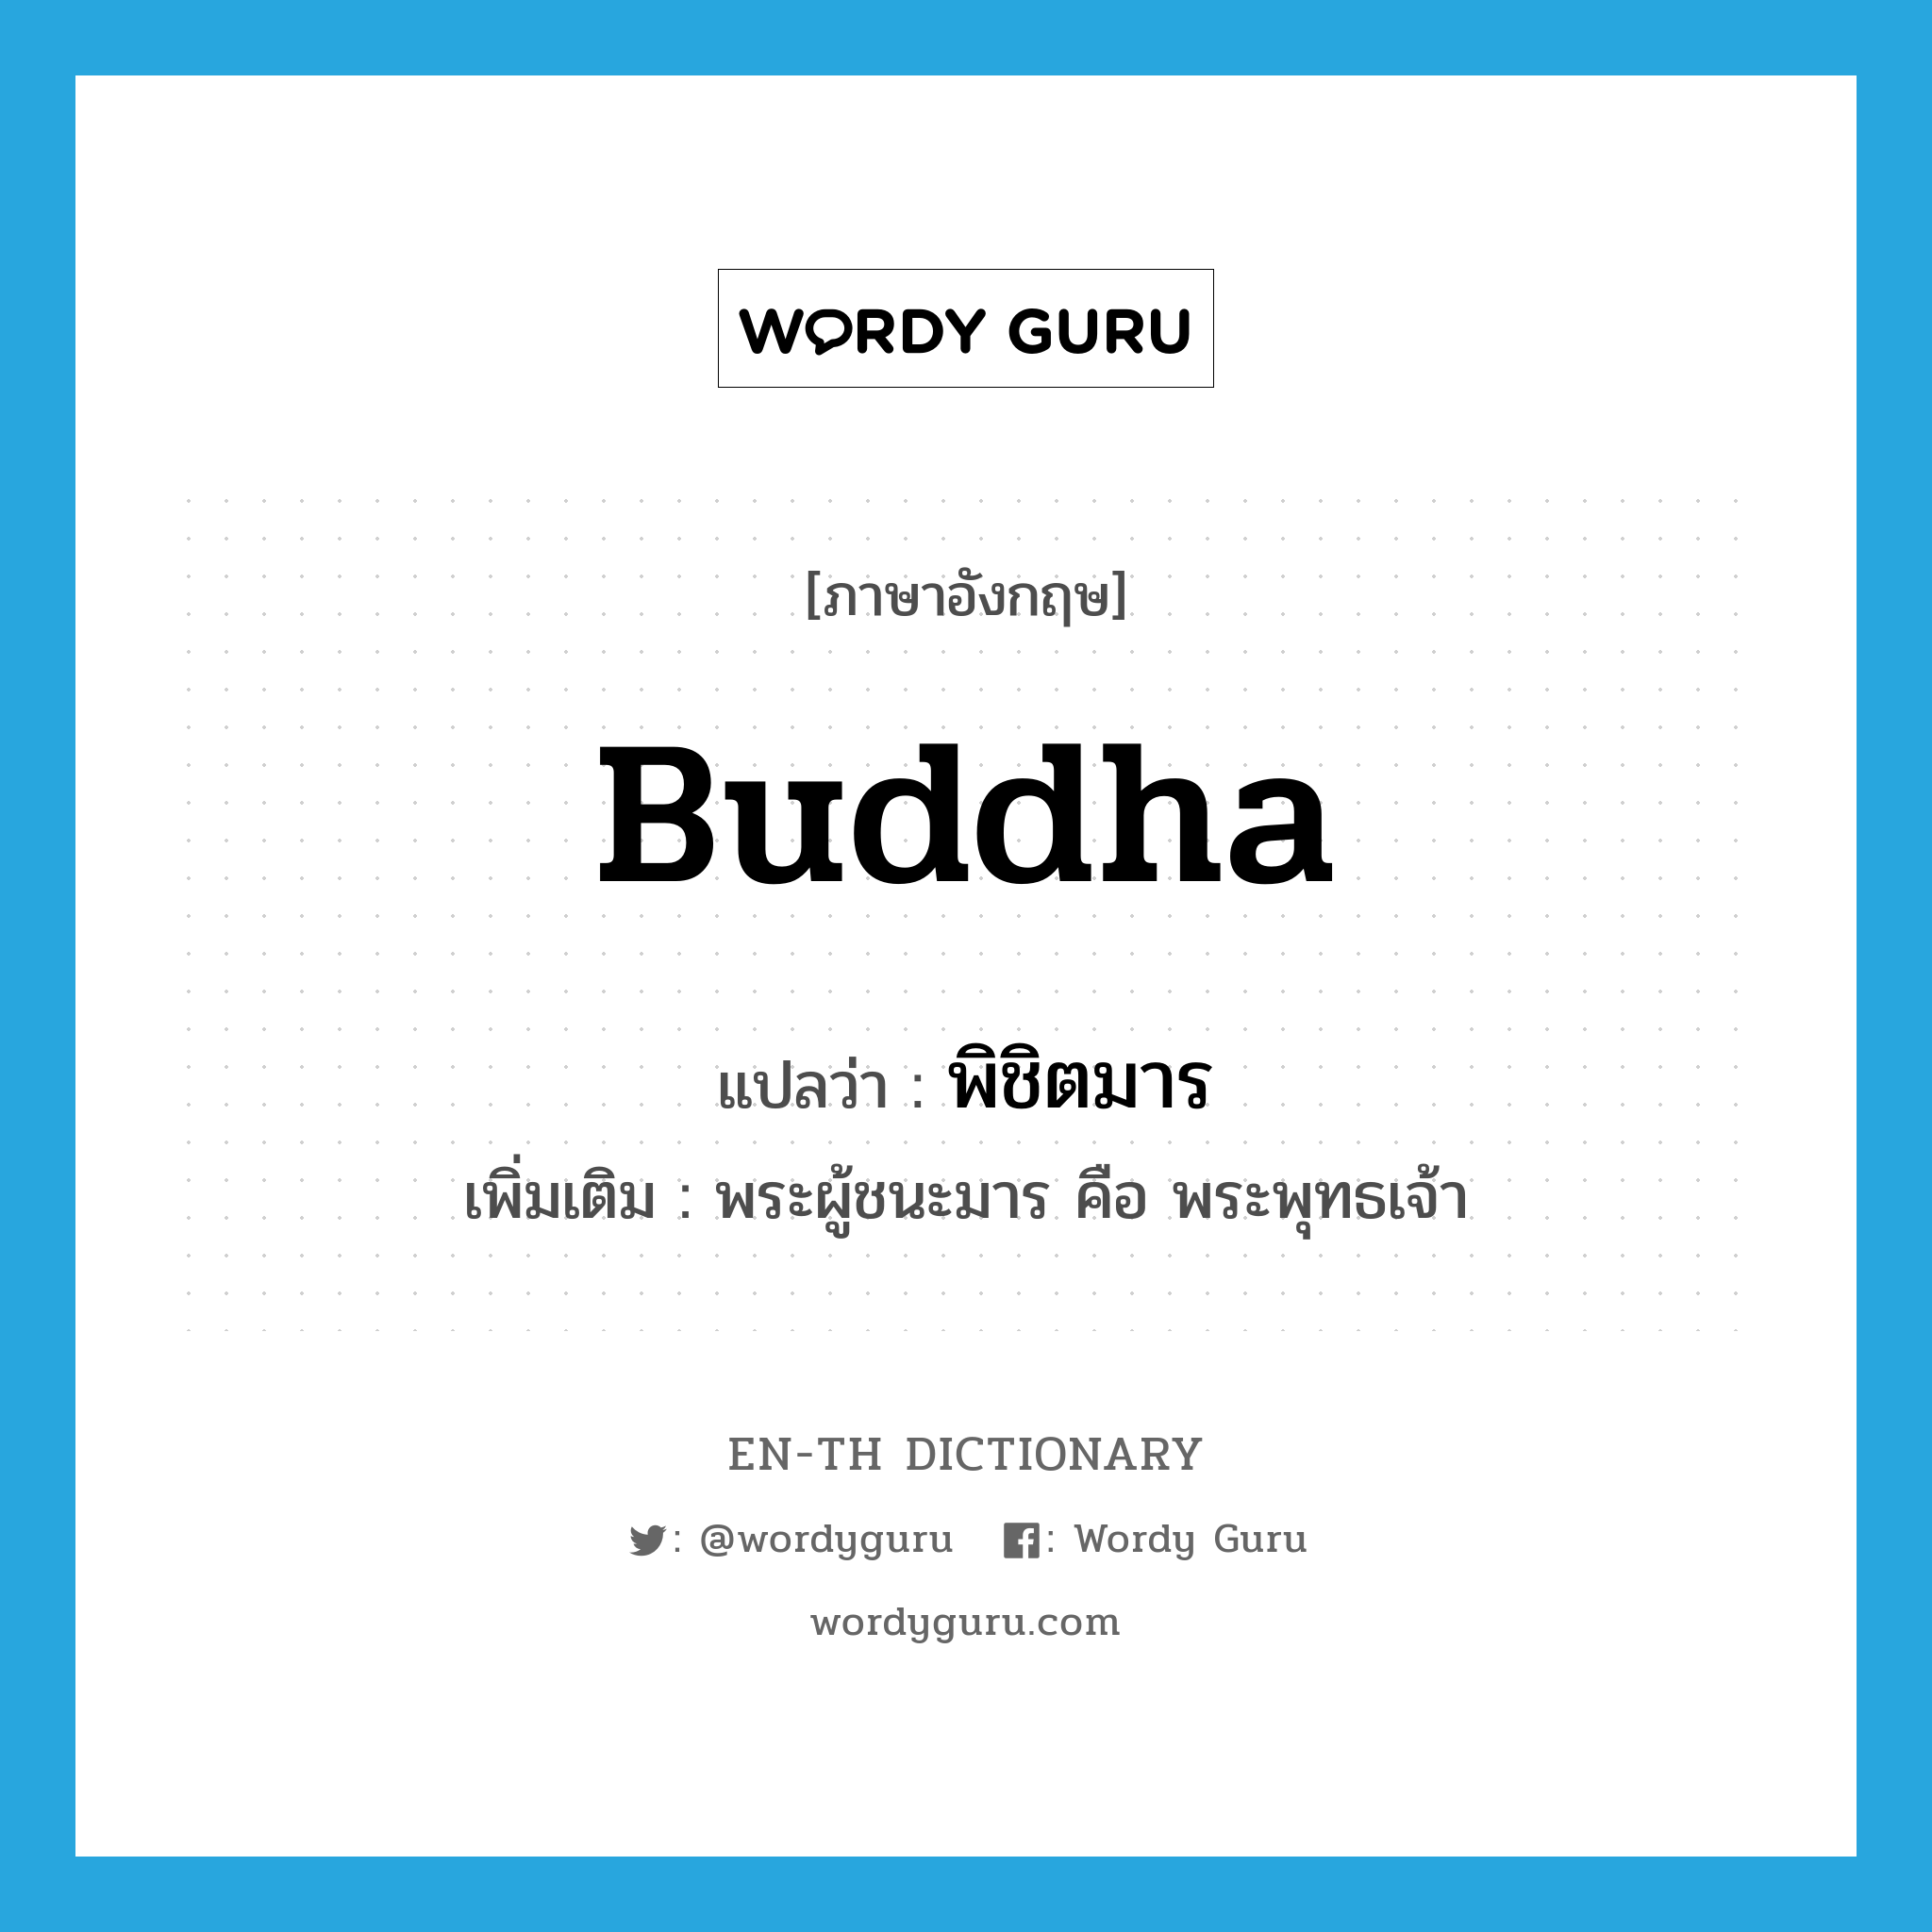 พิชิตมาร ภาษาอังกฤษ?, คำศัพท์ภาษาอังกฤษ พิชิตมาร แปลว่า Buddha ประเภท N เพิ่มเติม พระผู้ชนะมาร คือ พระพุทธเจ้า หมวด N